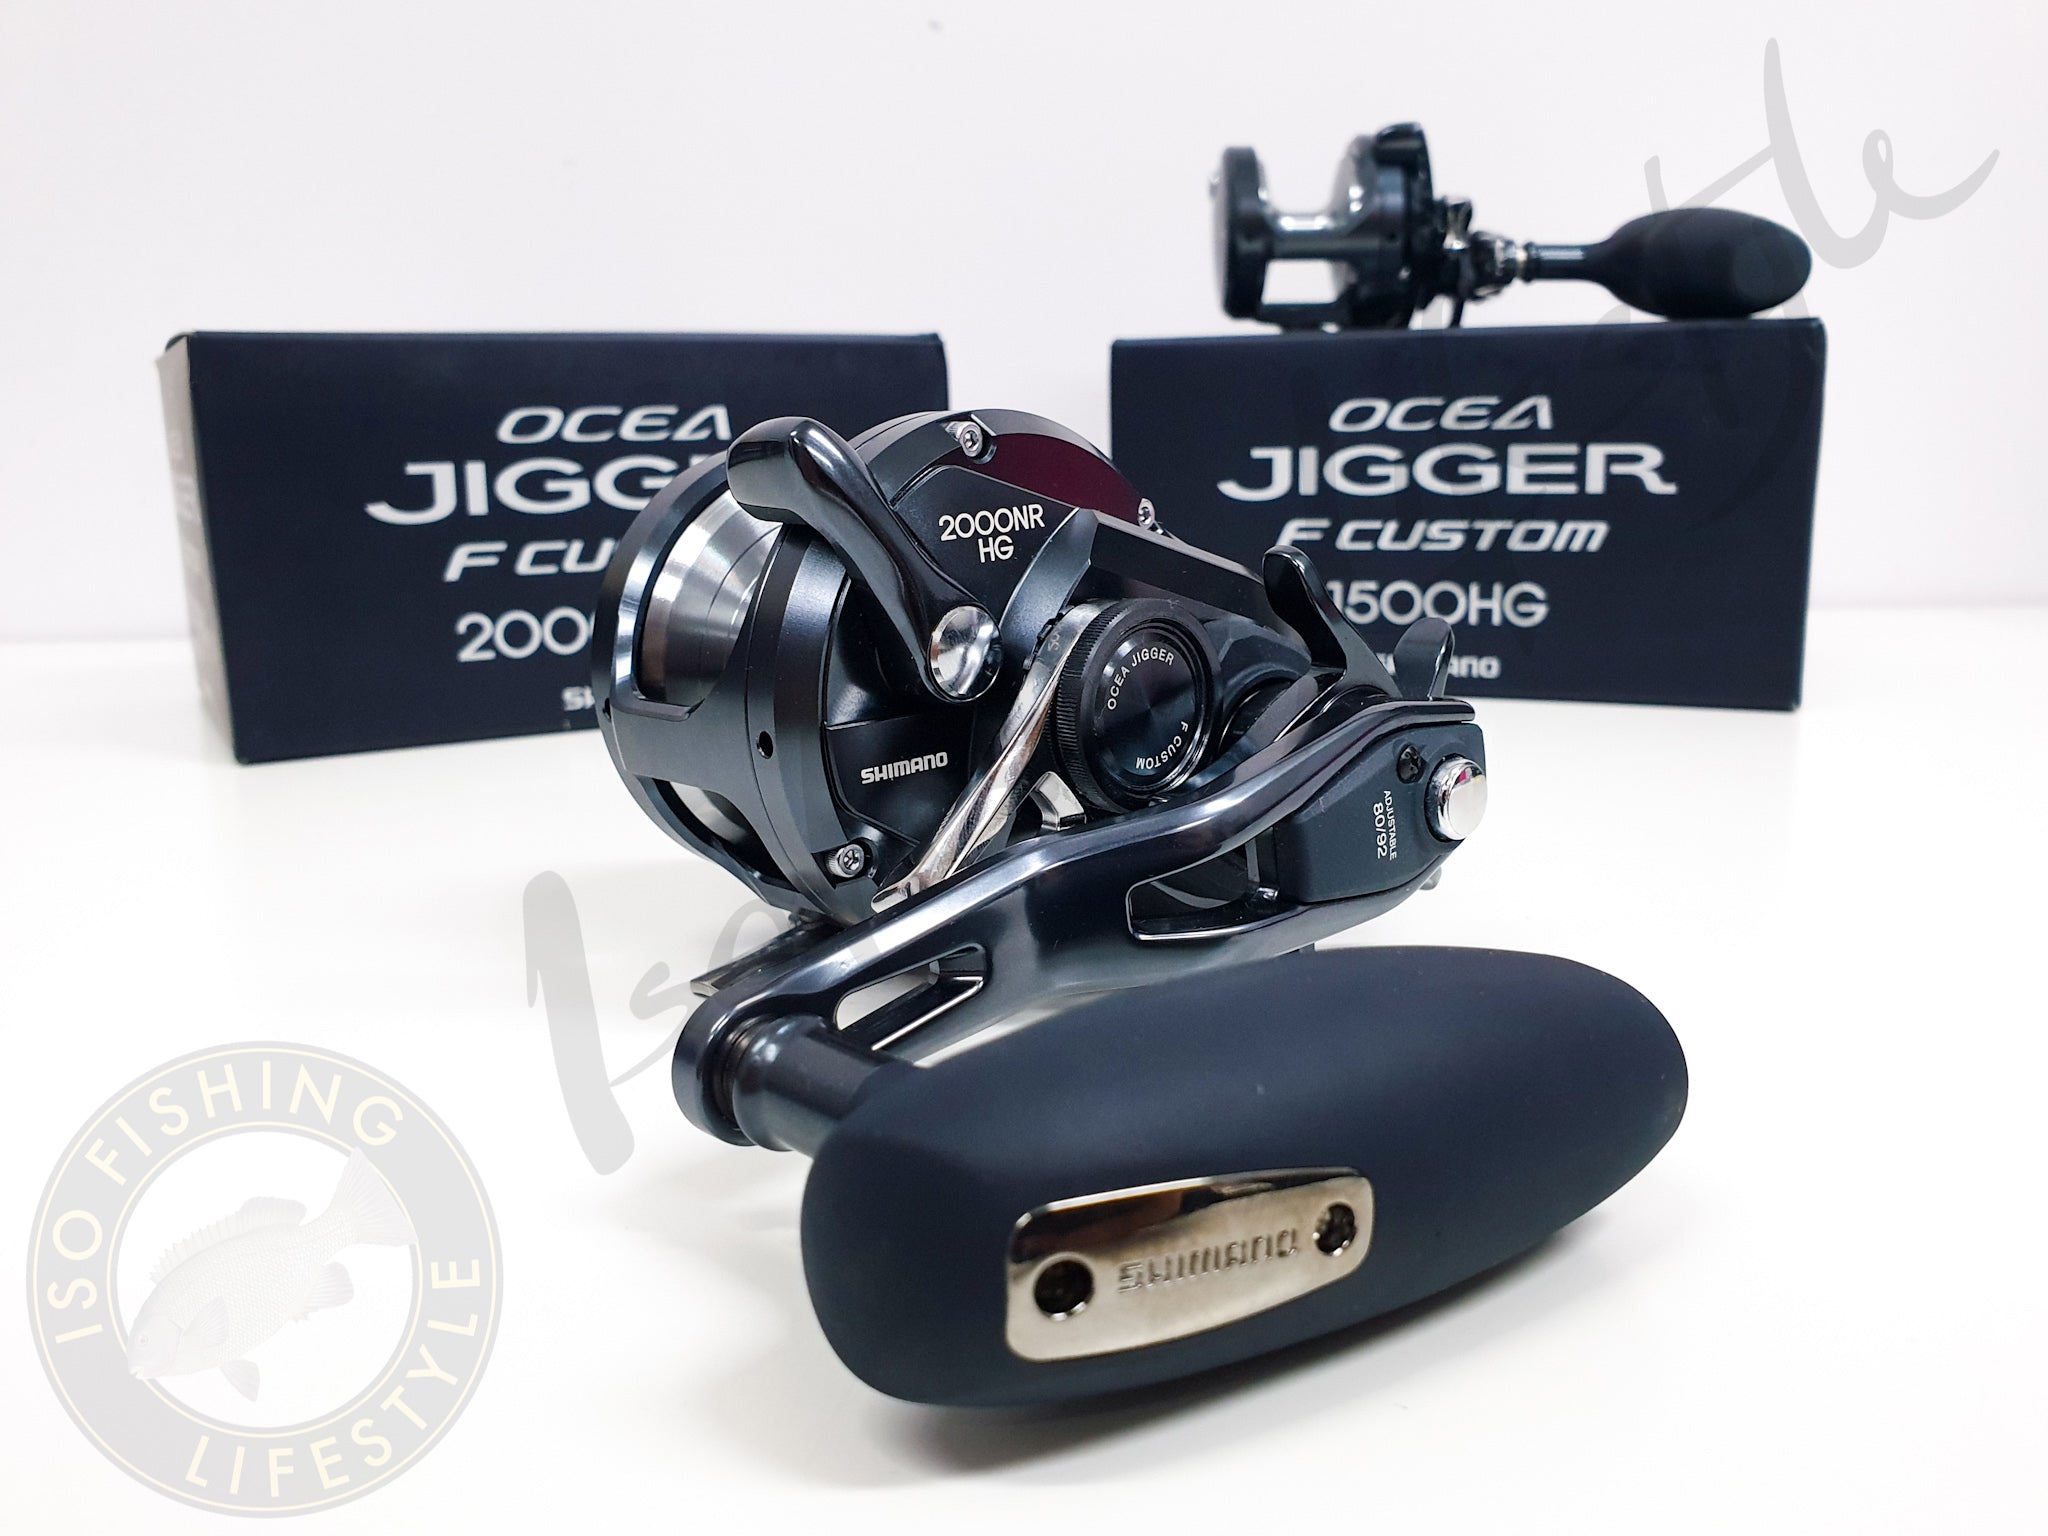 Shimano 19 Ocea Jigger F Custom